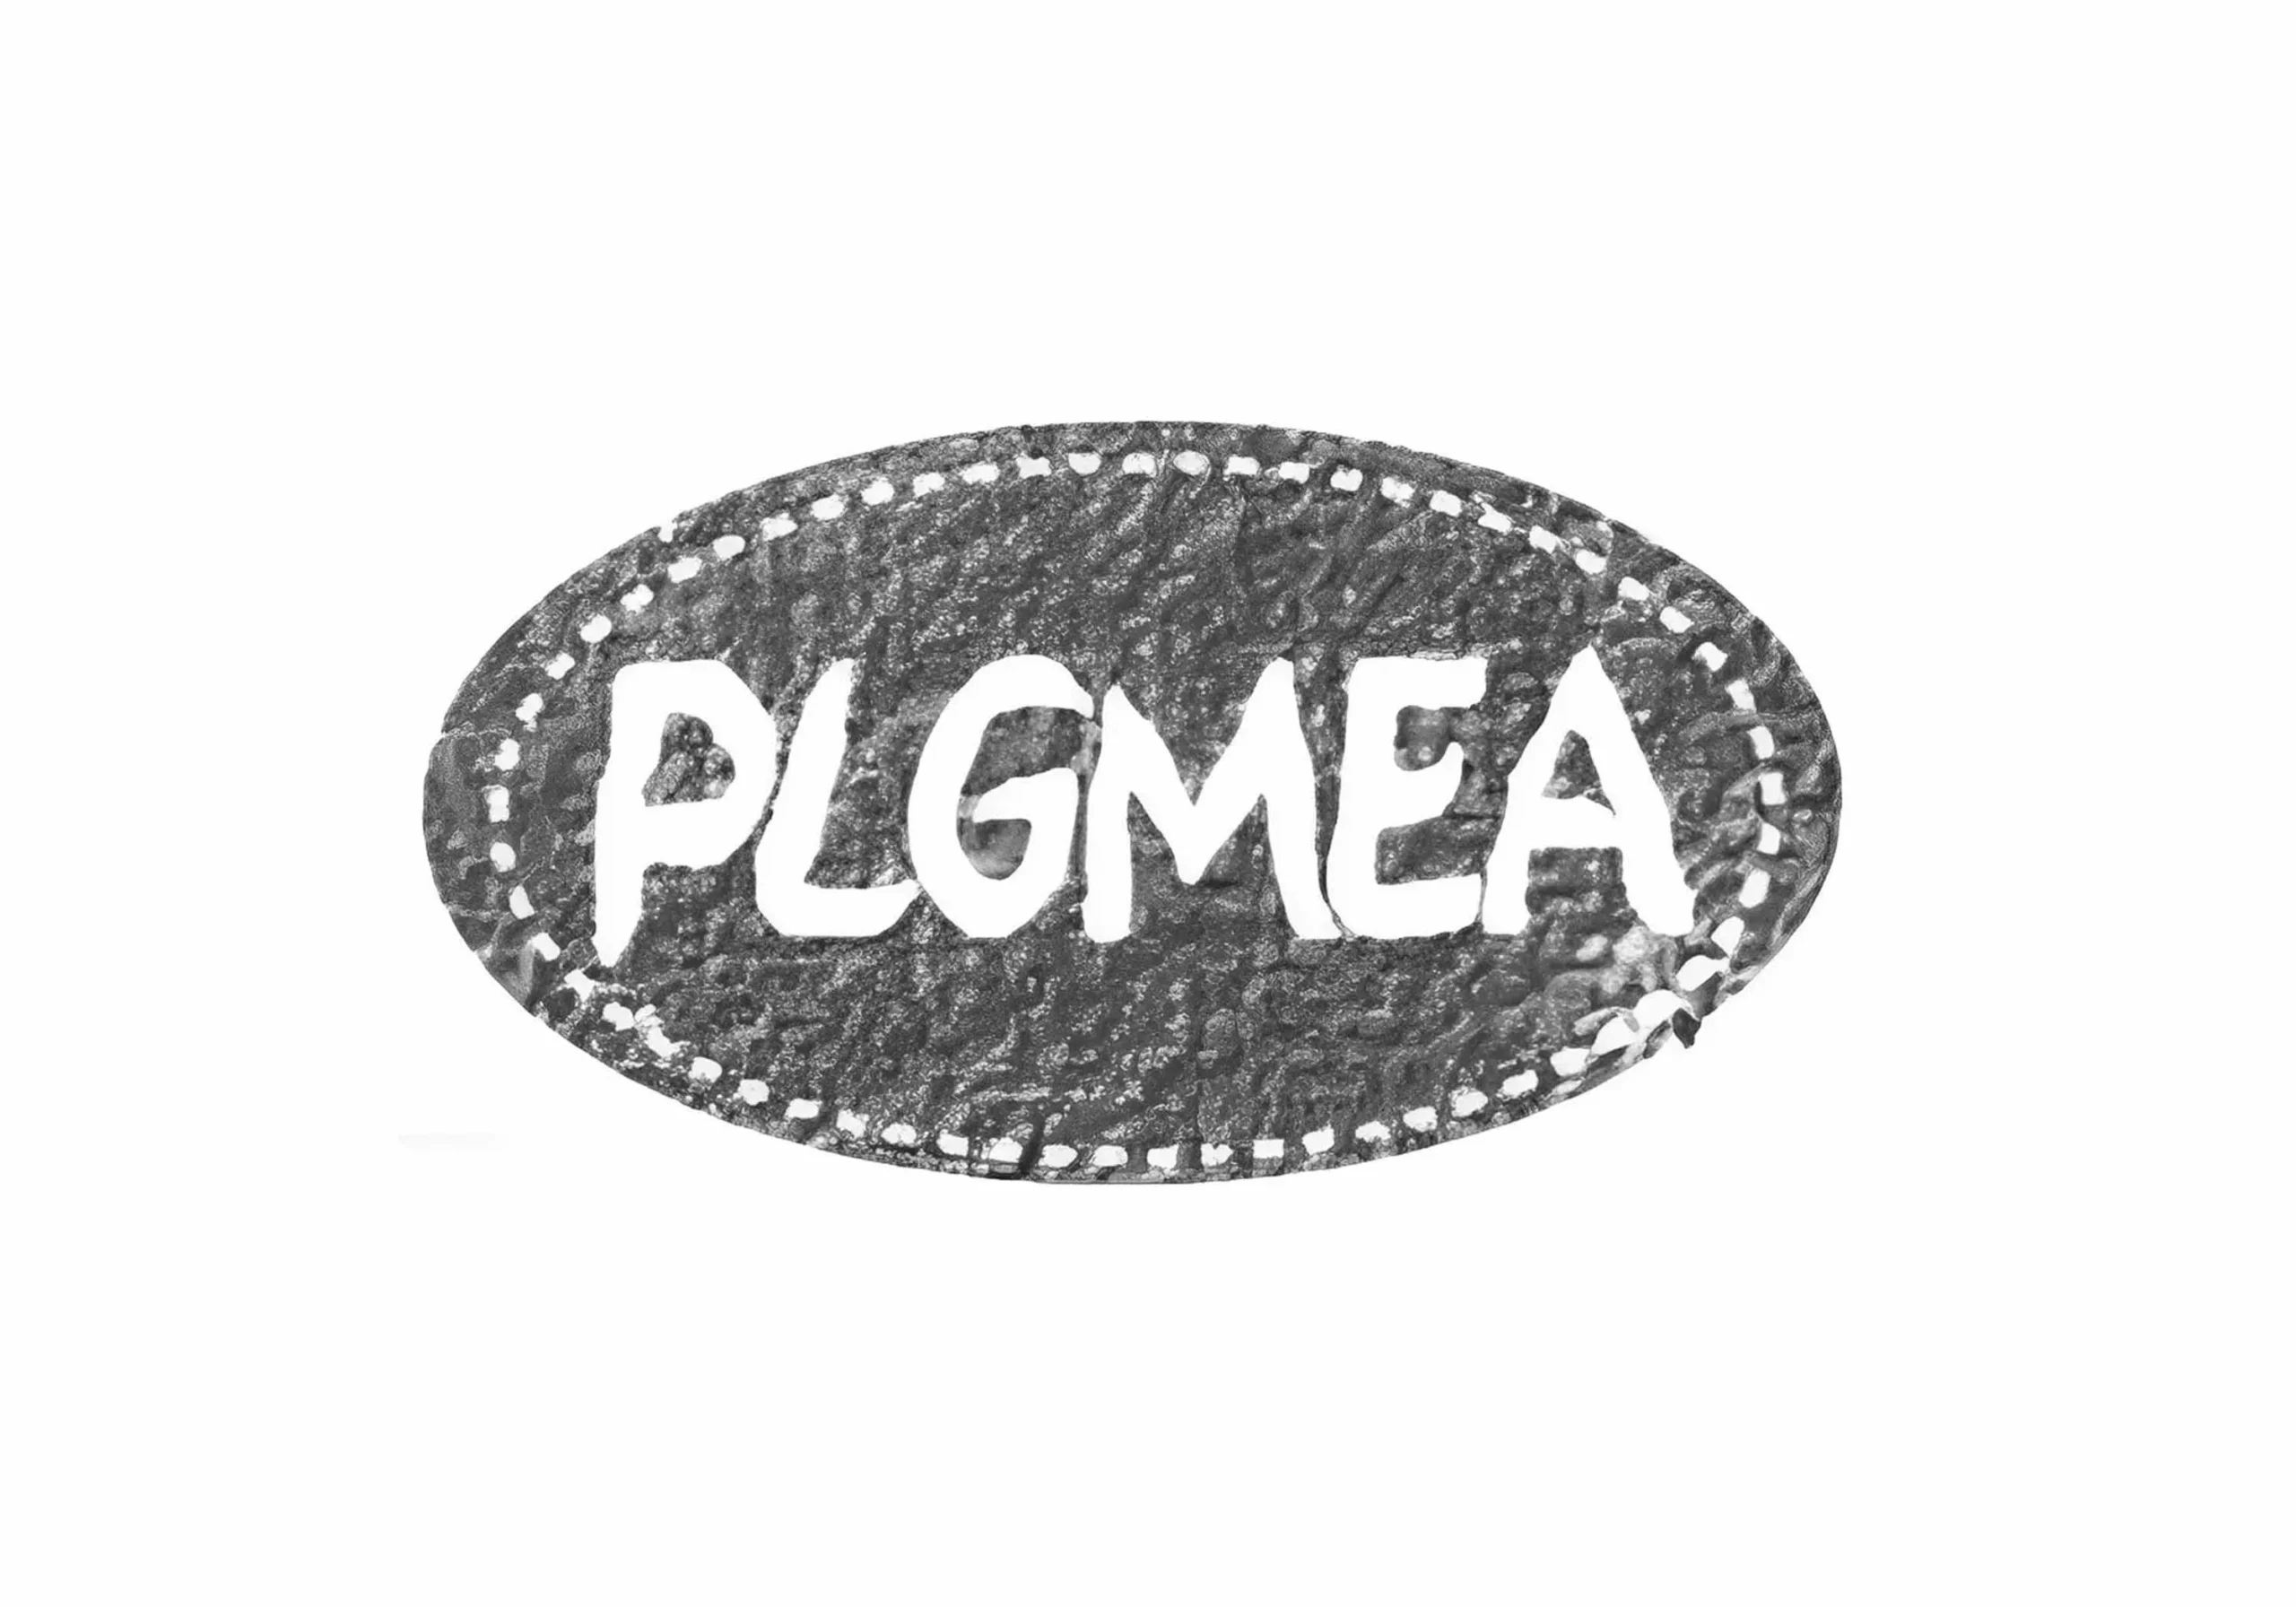 PLGMEA Jpg